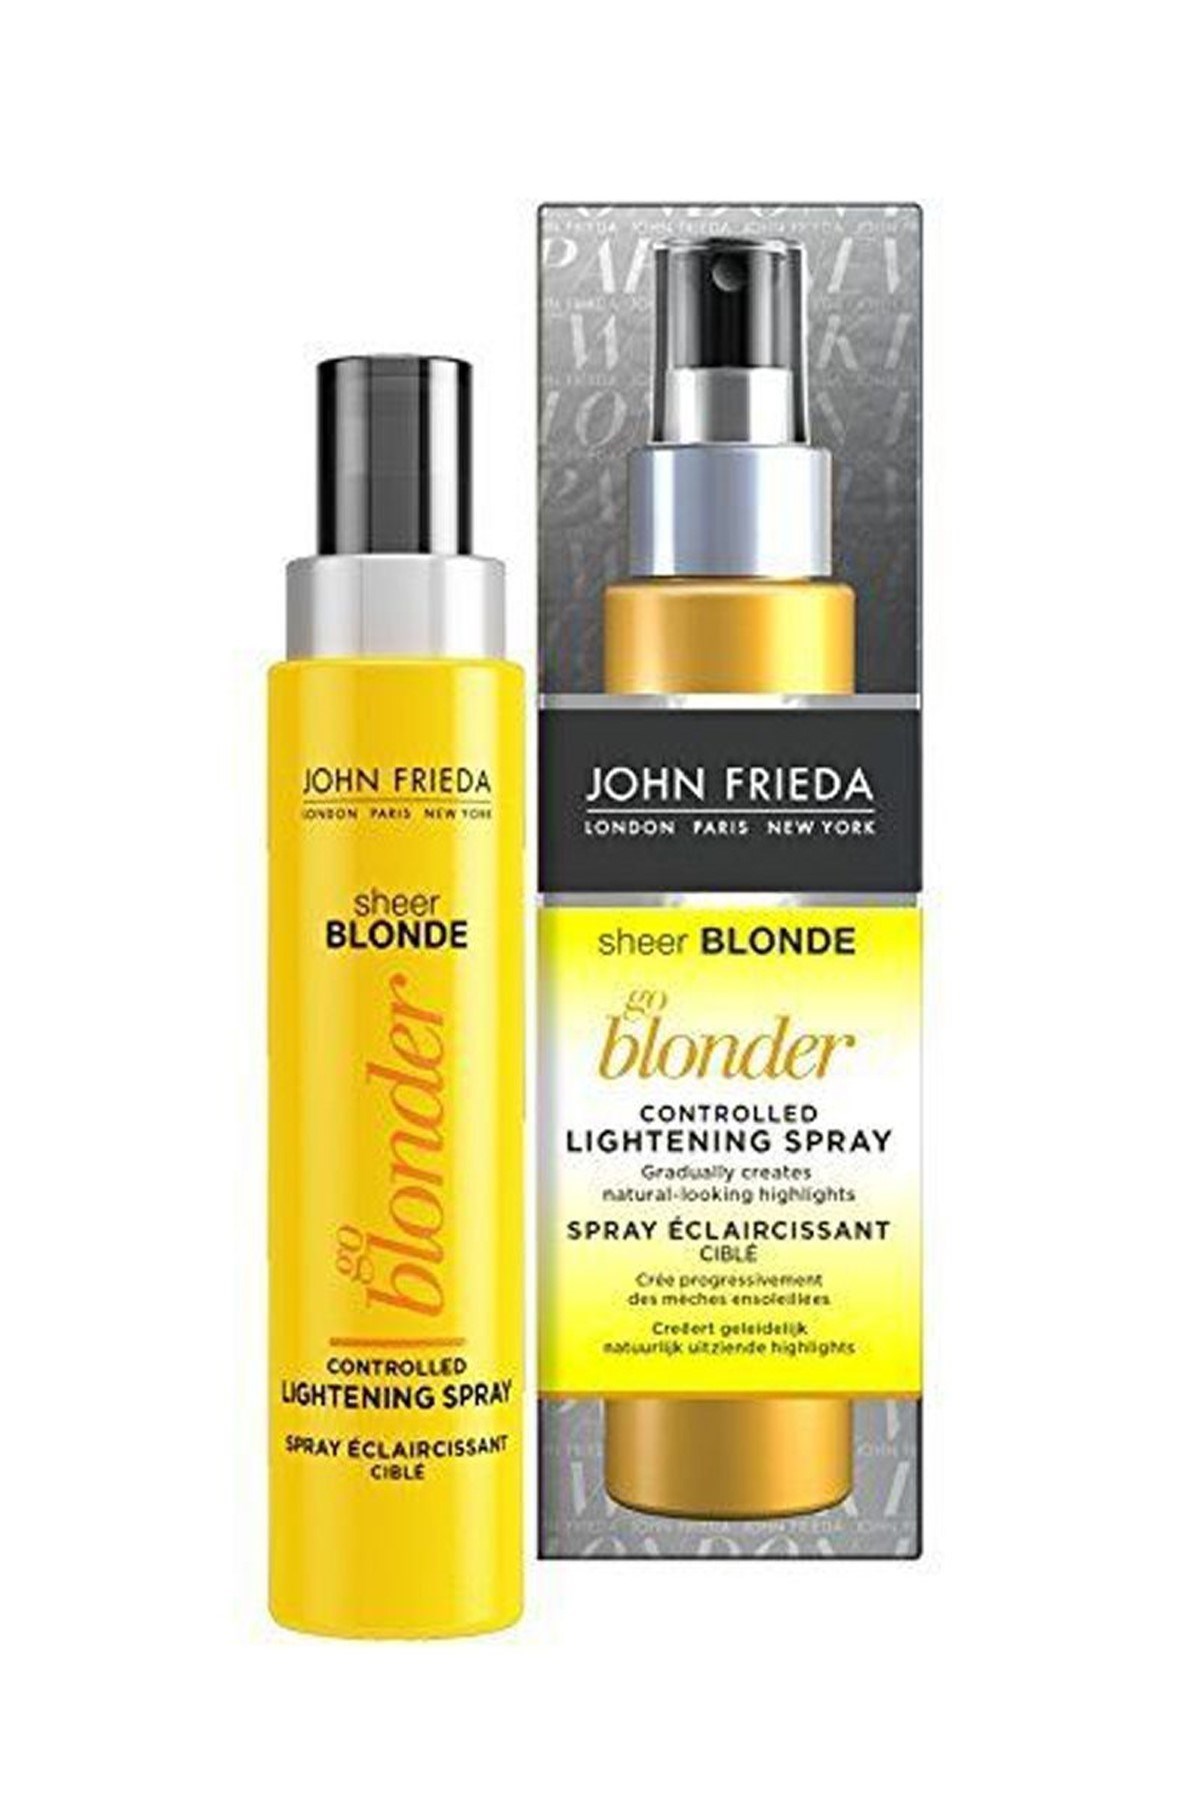 John Frieda Sheer Blonde Sarı Saçlar için Renk Açıcı Sprey 100 ml |  Dermolist.com | 0(312)9119949